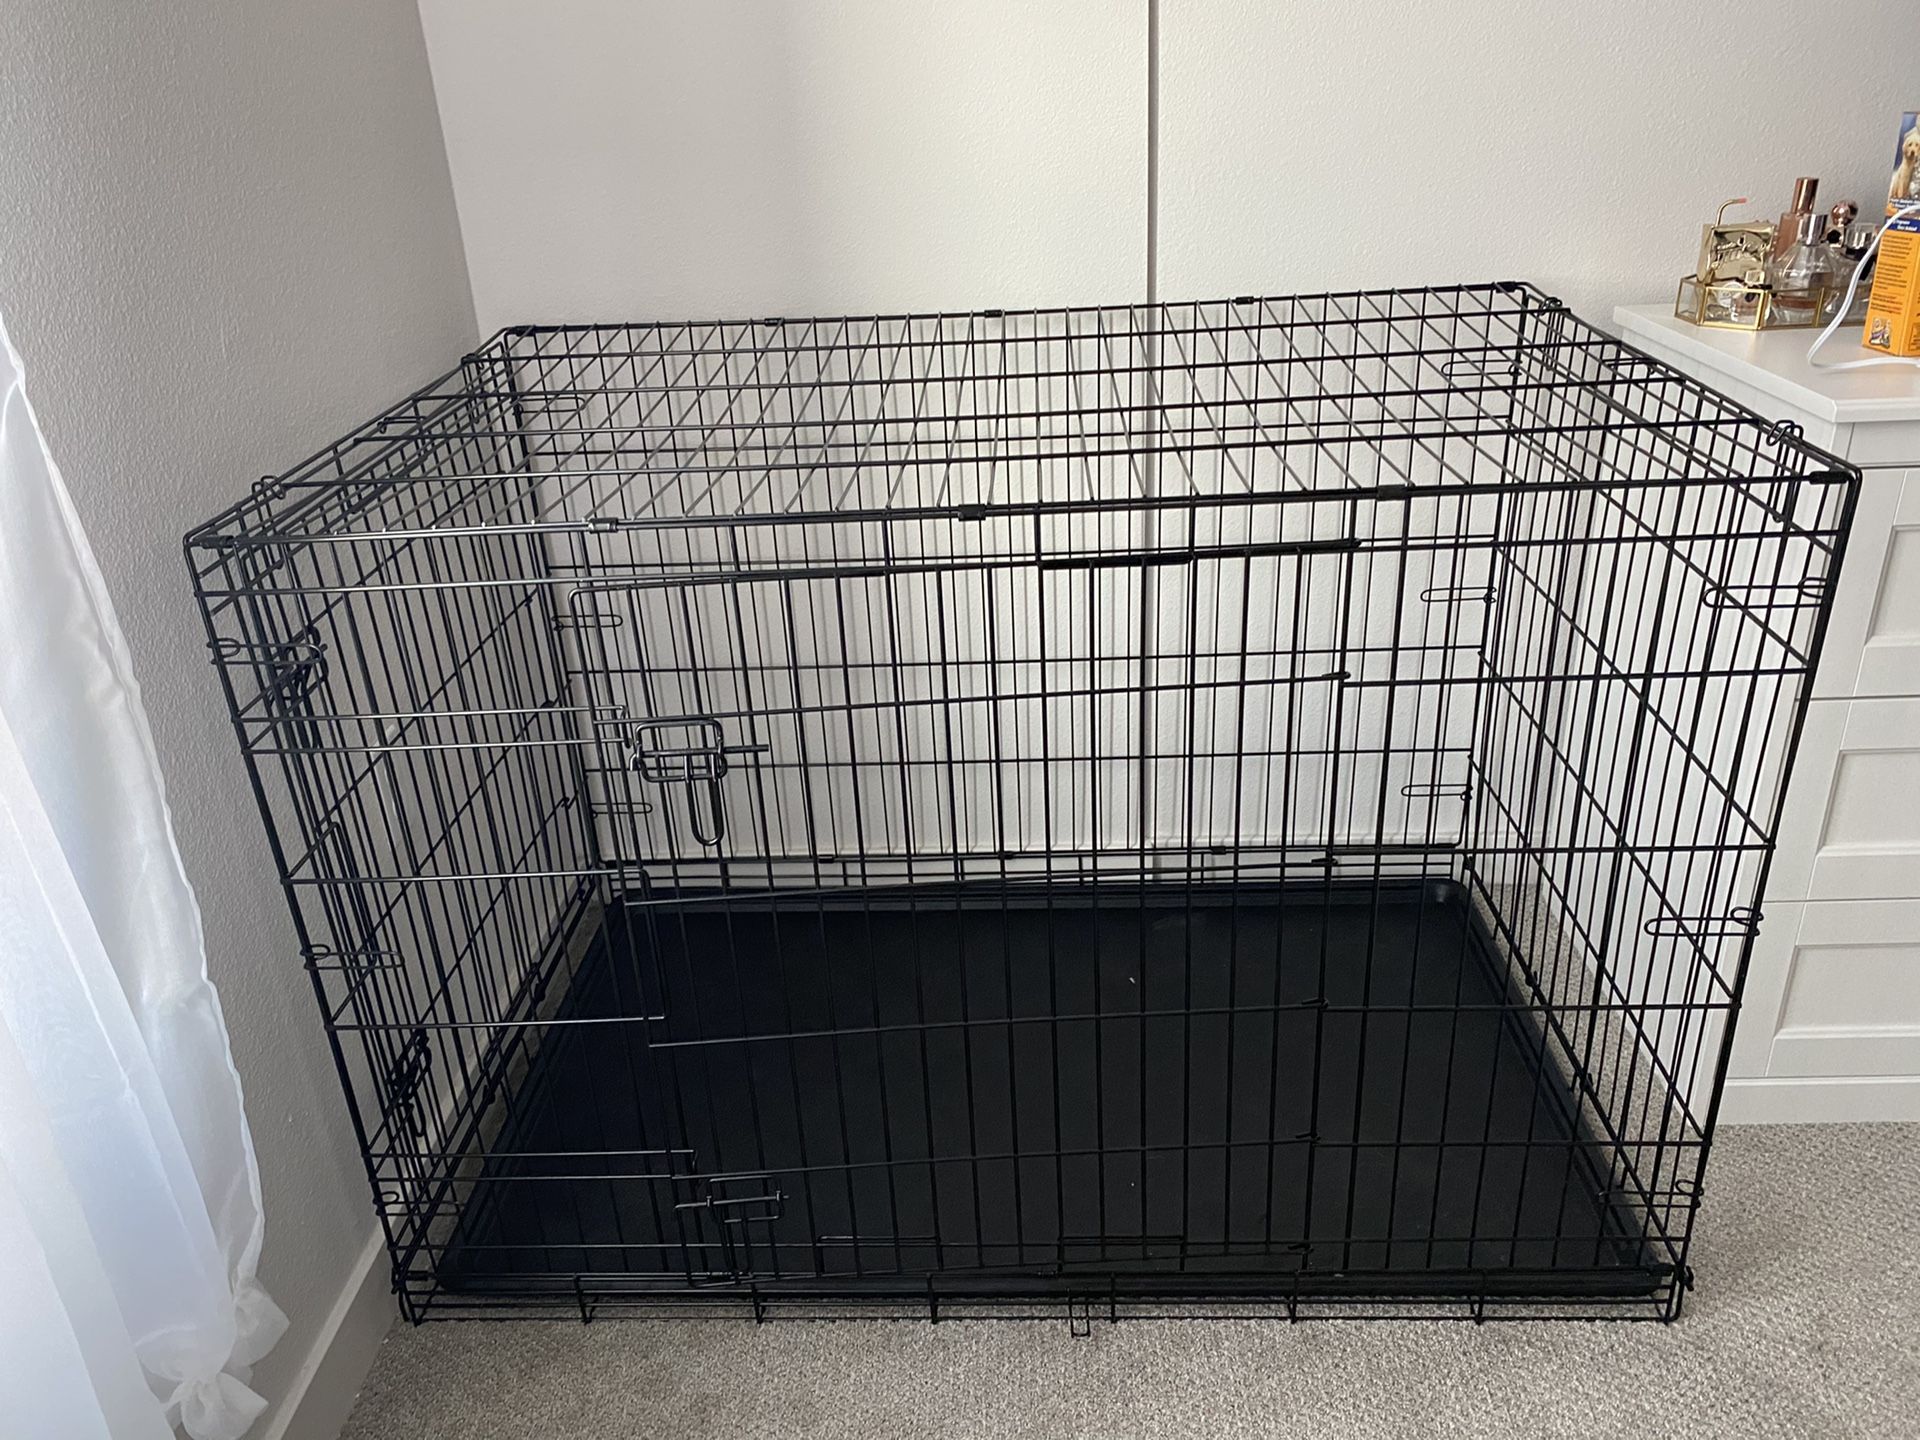 Amazon Basics 48” Dog Crate Kennel